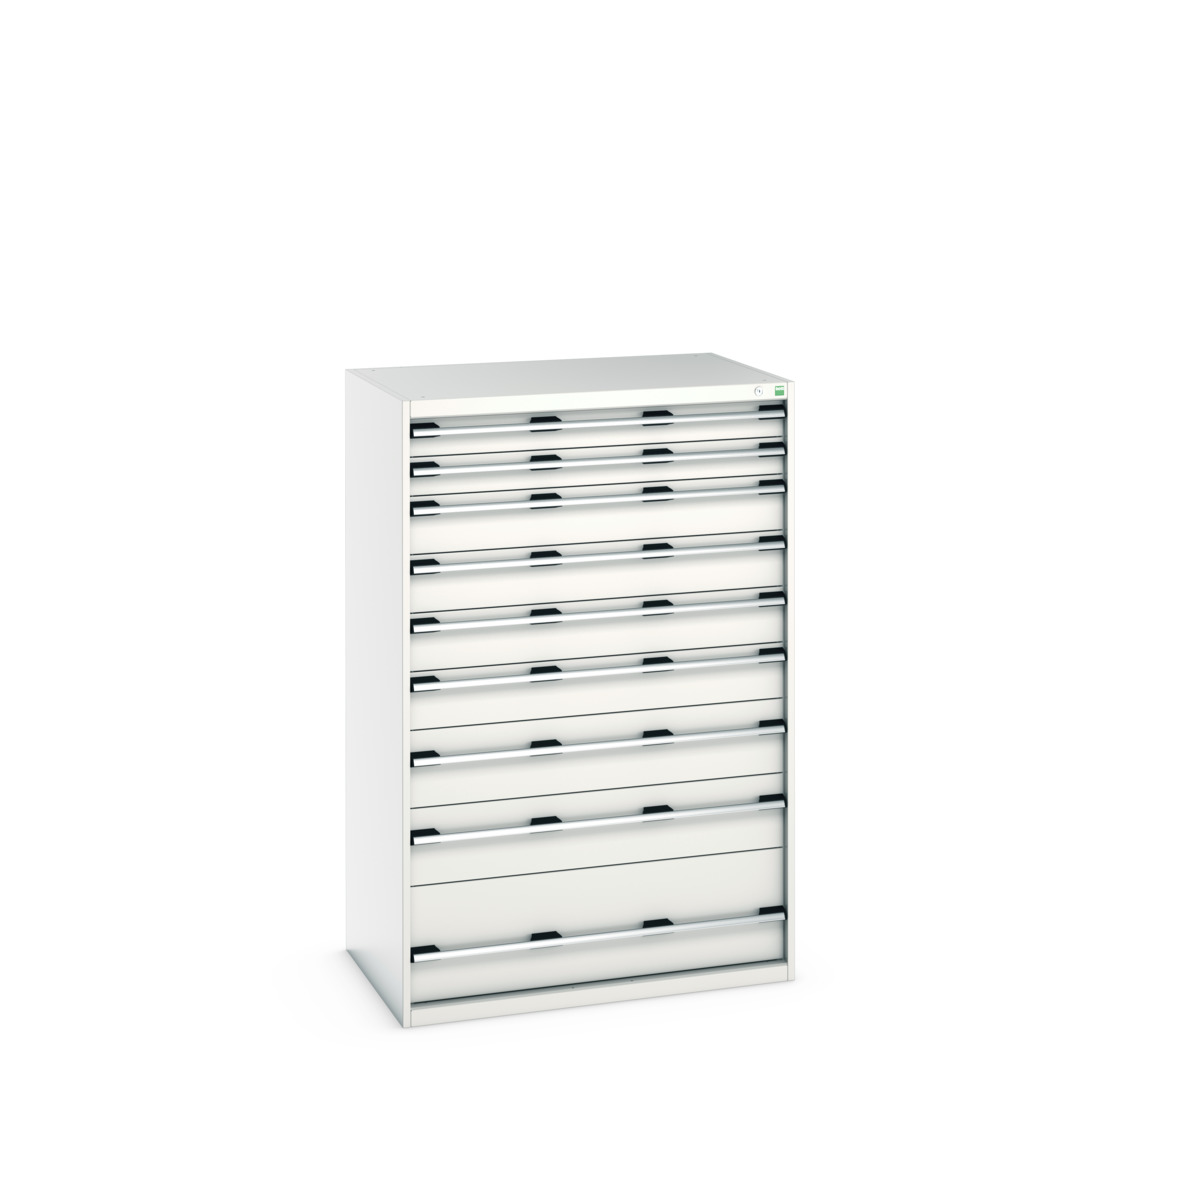 40029036.16V - cubio drawer cabinet